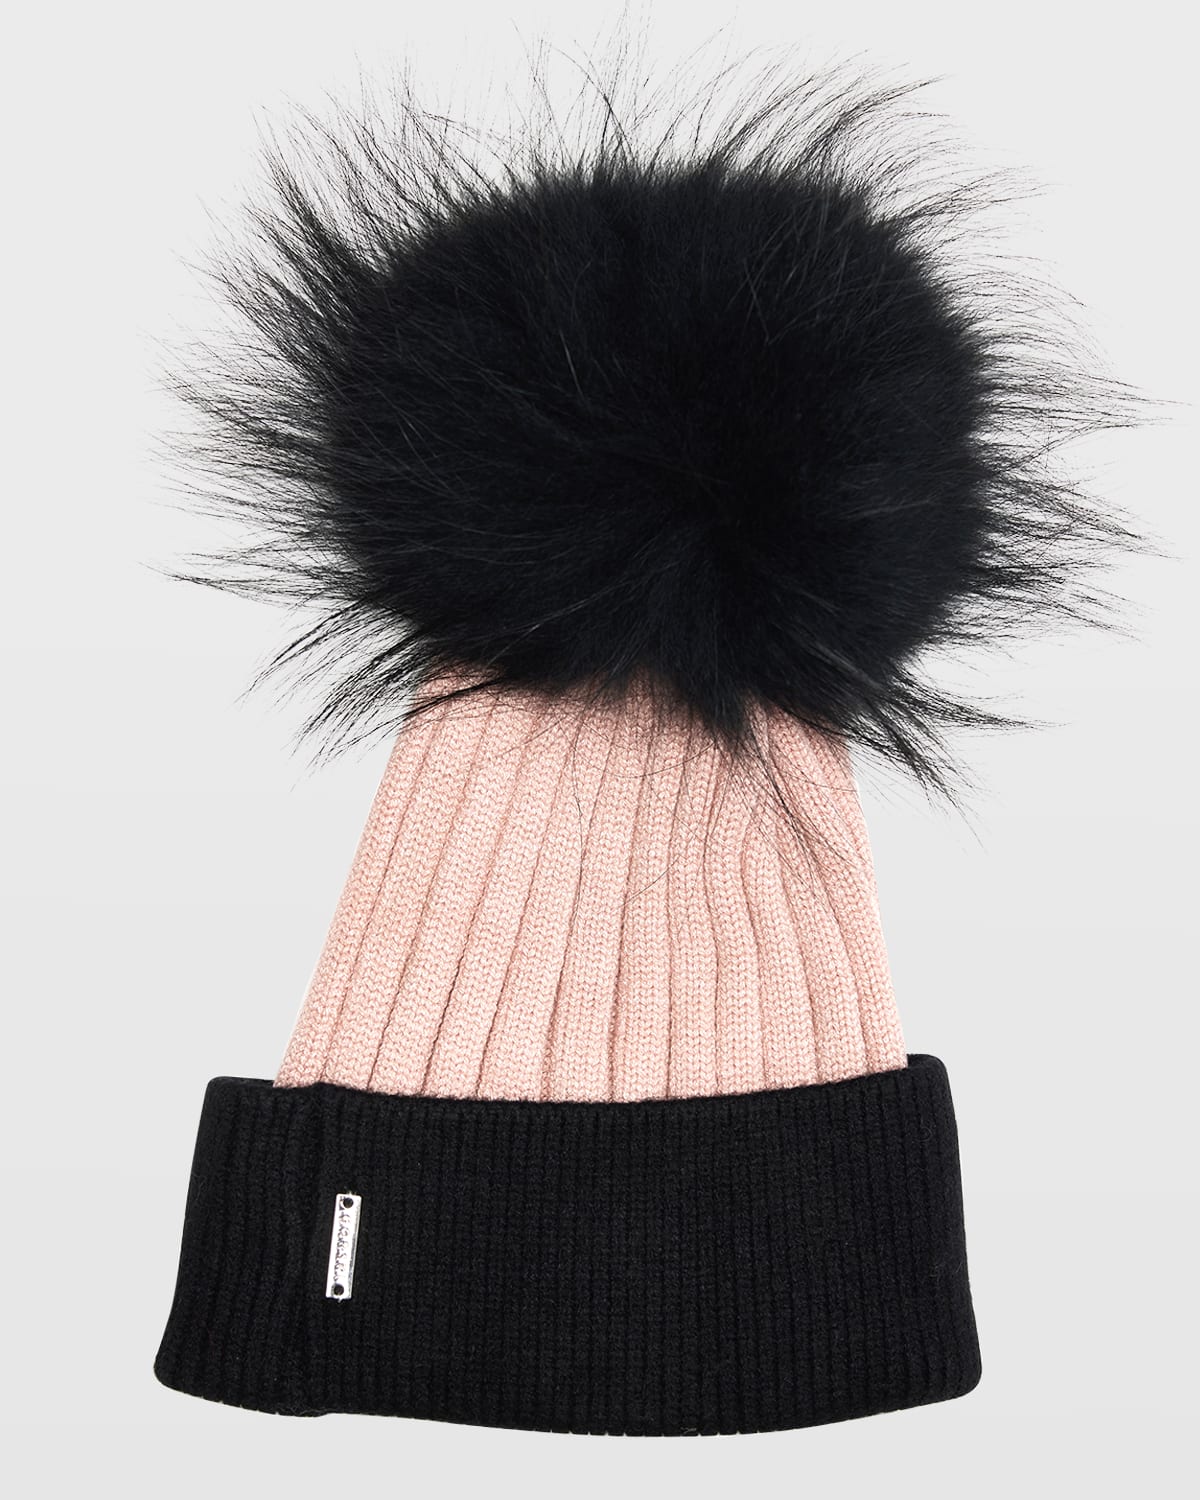 Gorski Two-tone Knit Beanie W/ Fox Pompom In Black/pink